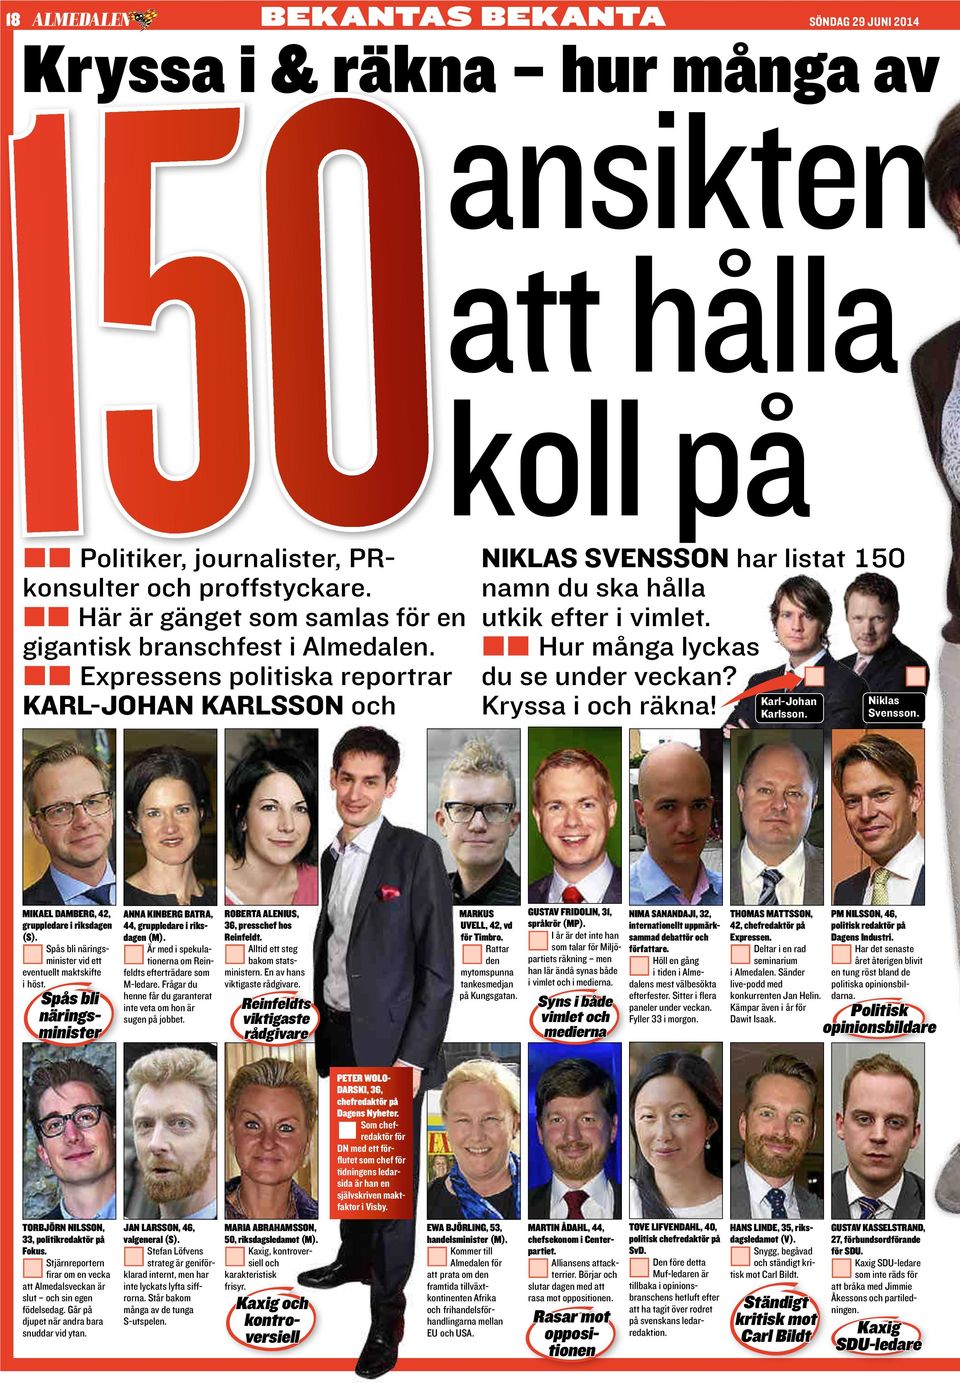 M M Expressens politiska reportrar M M Hur ånga lyckas du se under veckan? M Karl-Johan Karl-Johan Karlsson och Kryssa i och räkna! Karlsson. M niklas svensson.